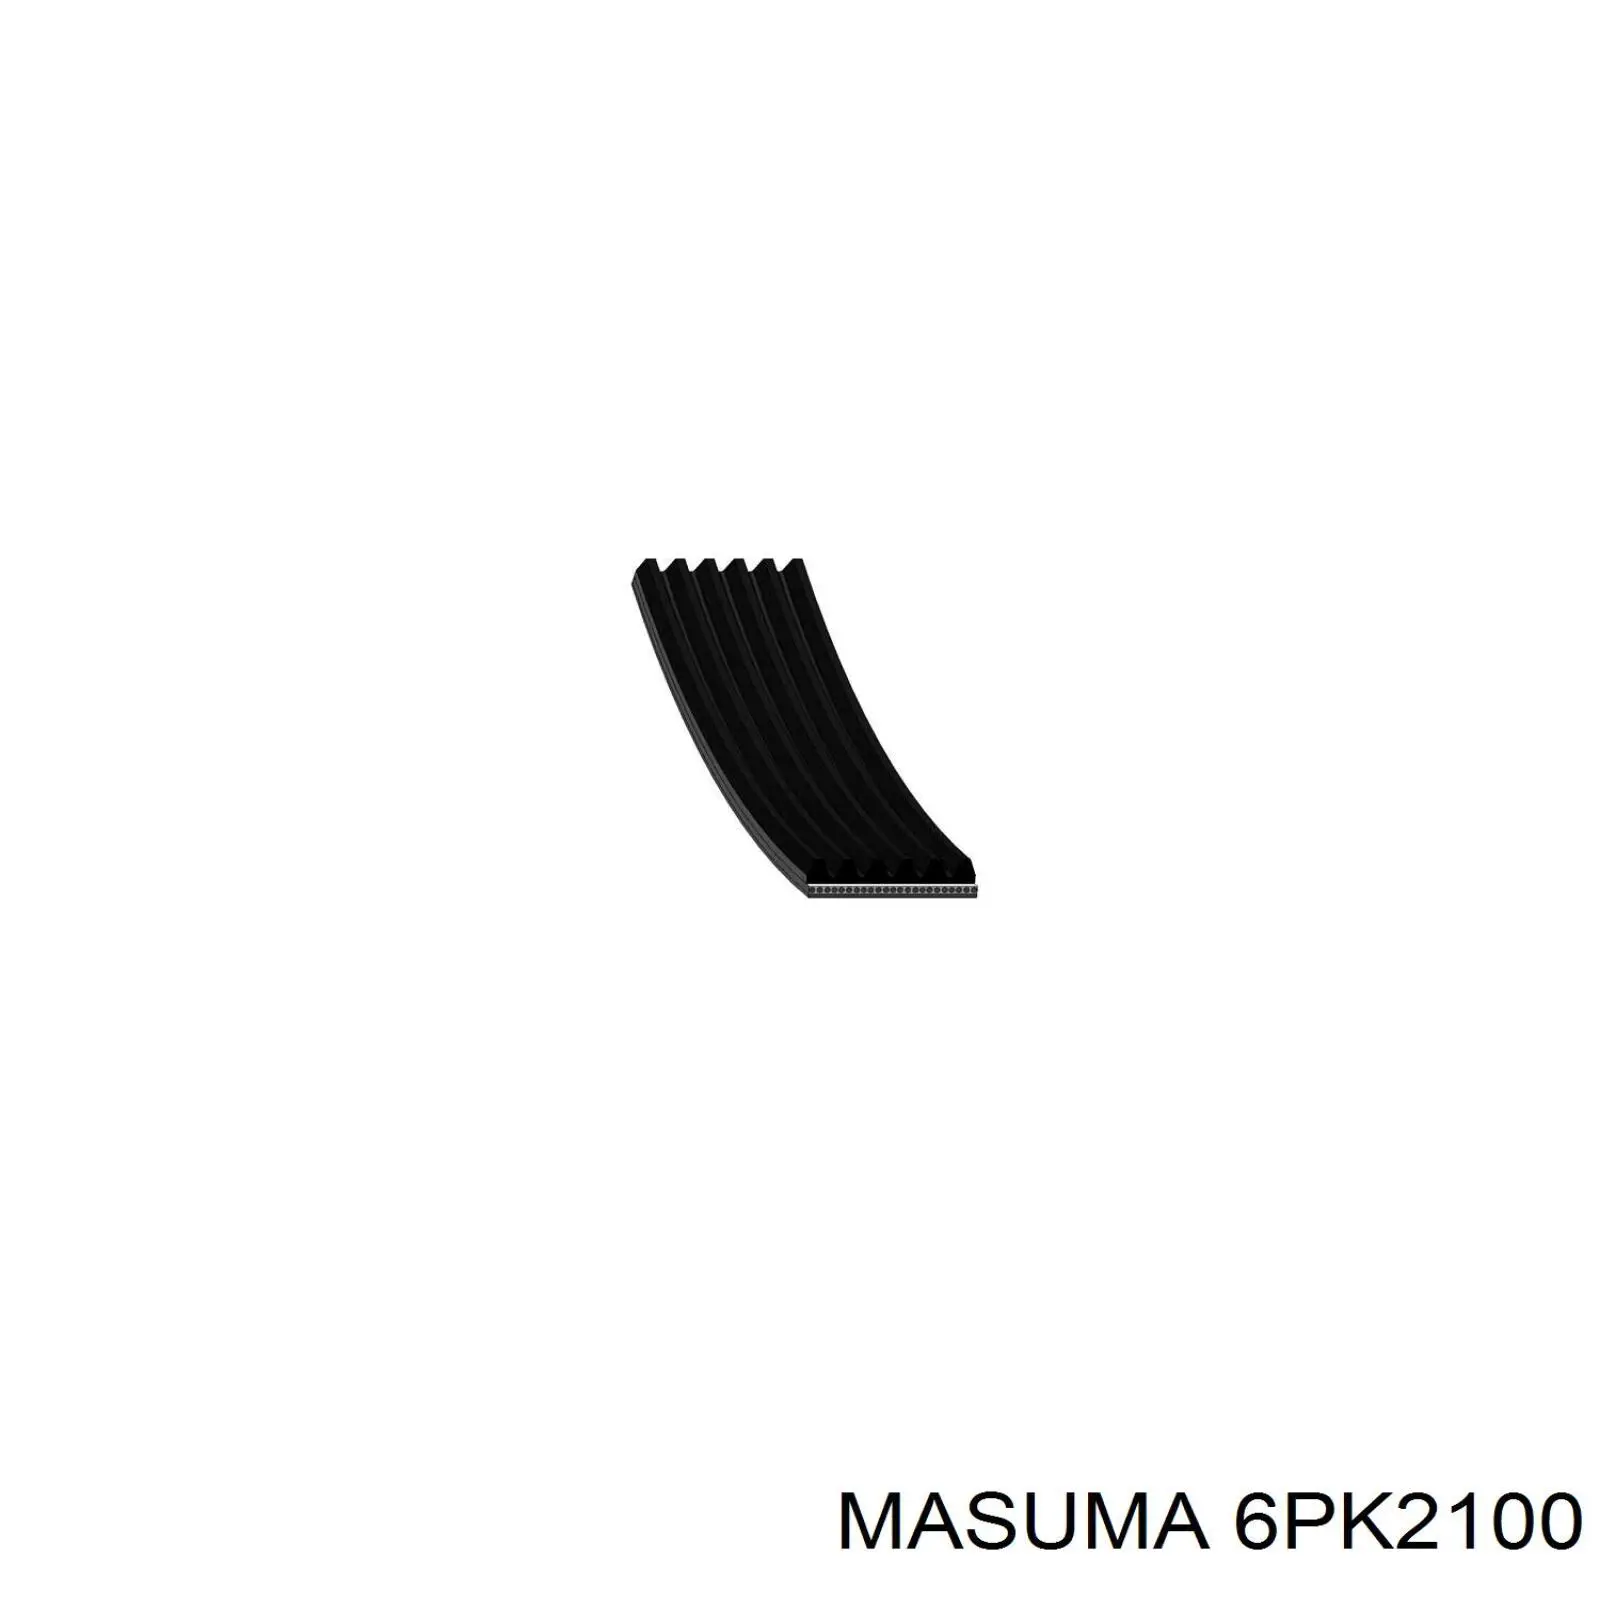 6PK2100 Masuma correa trapezoidal